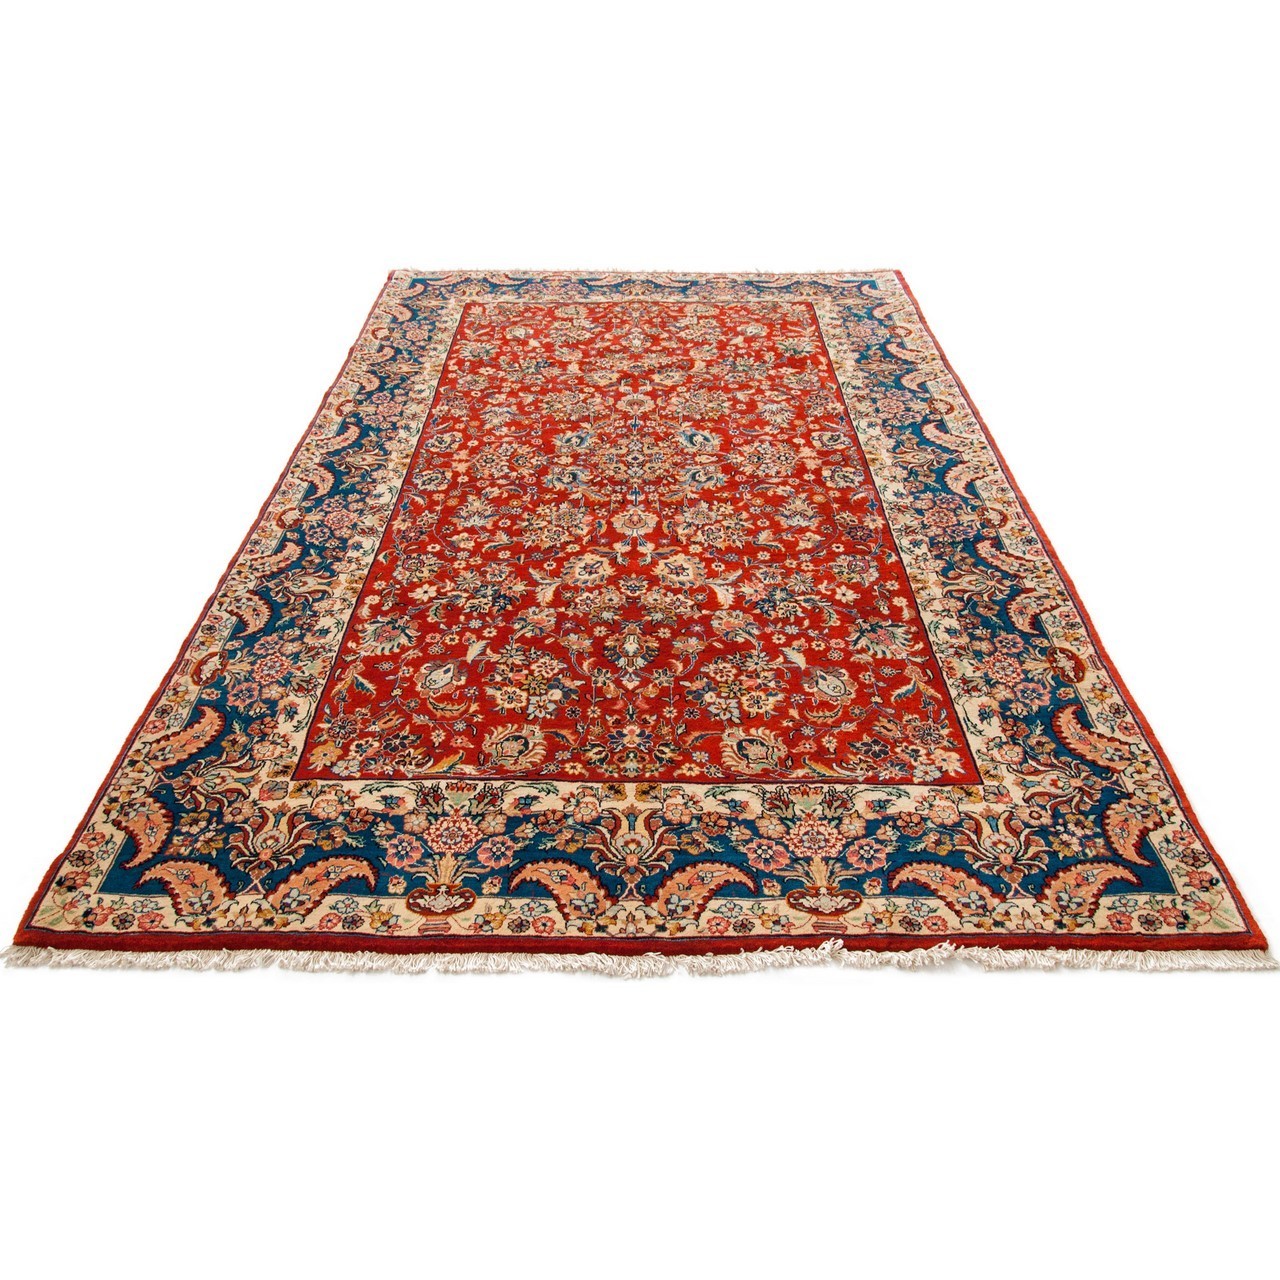 Ferahan Carpet Ref 101965